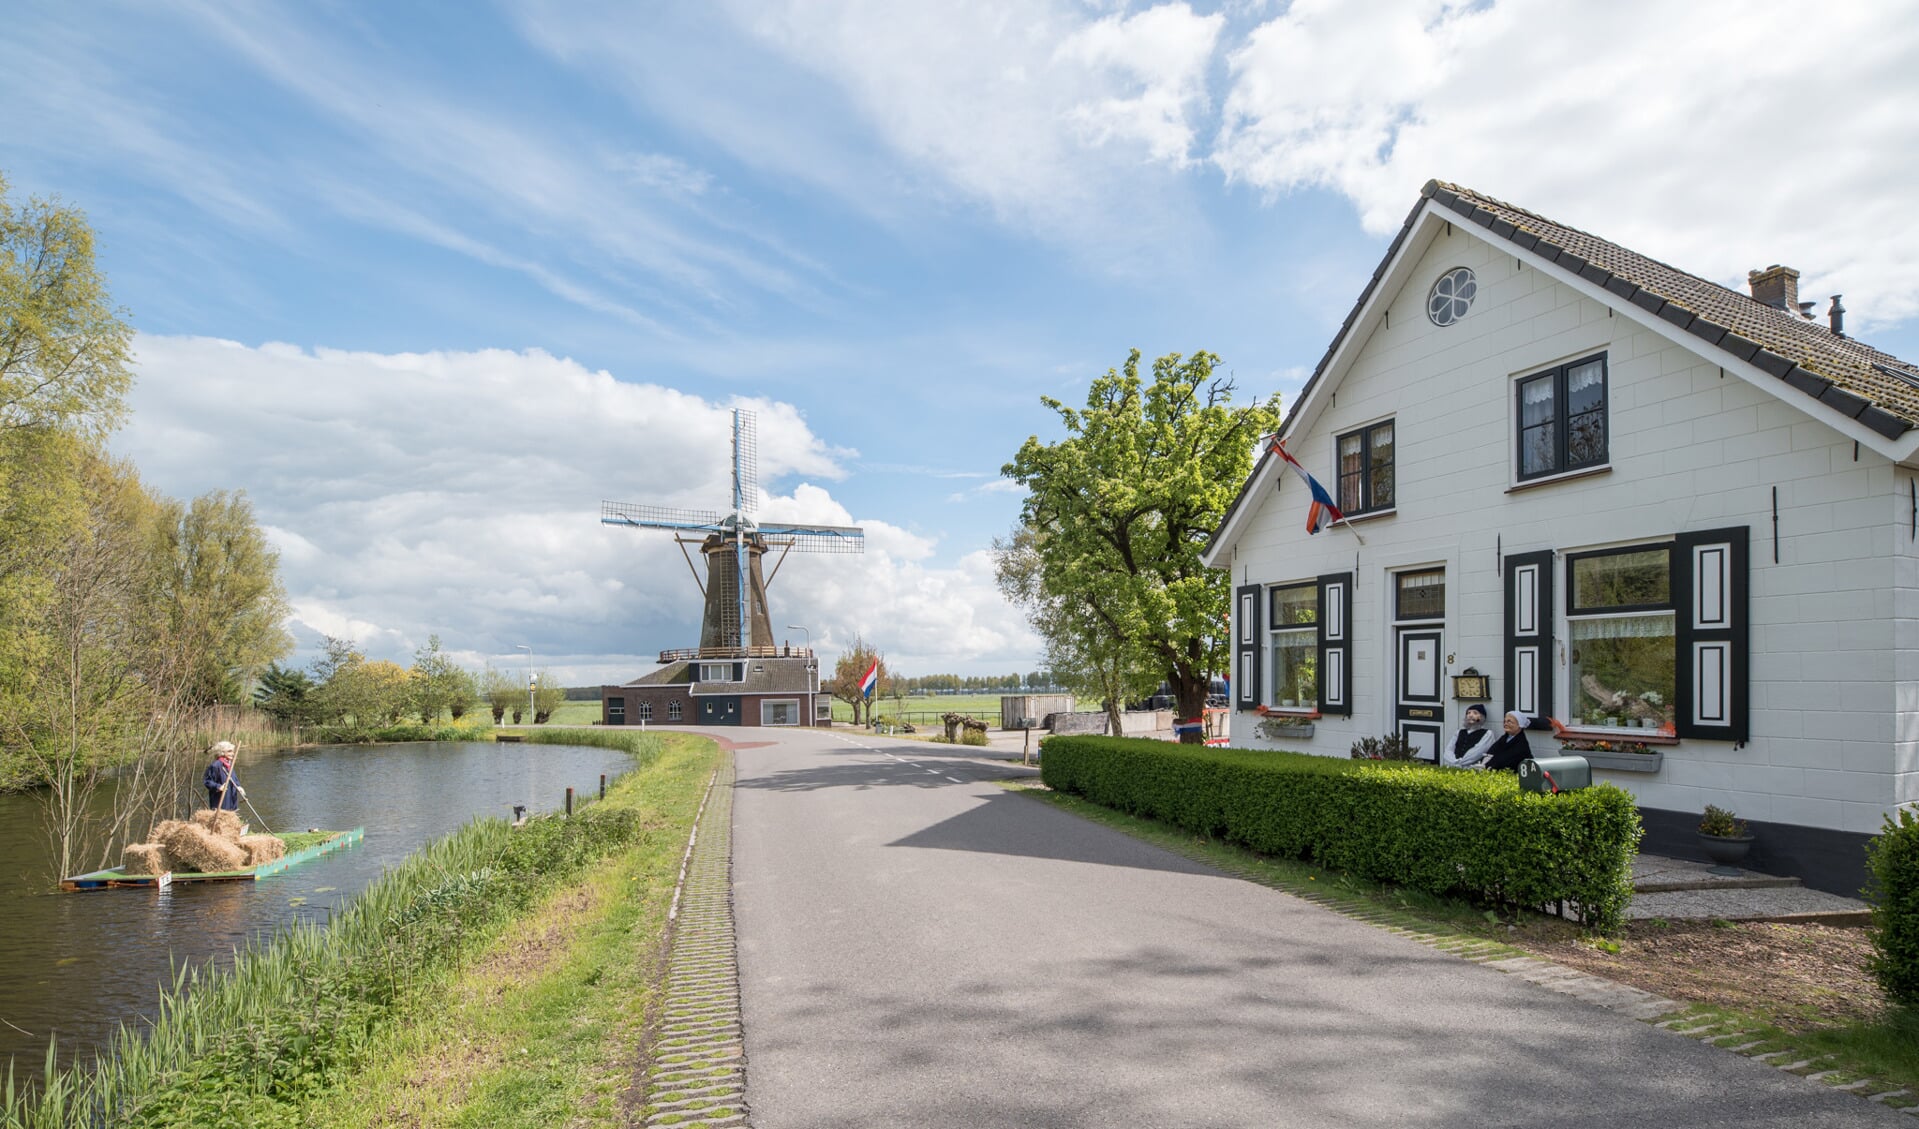 Dorpsgezicht Oud-Alblas, woonboerderij met korenmolen de Hoop. Foto: Joost Verweij